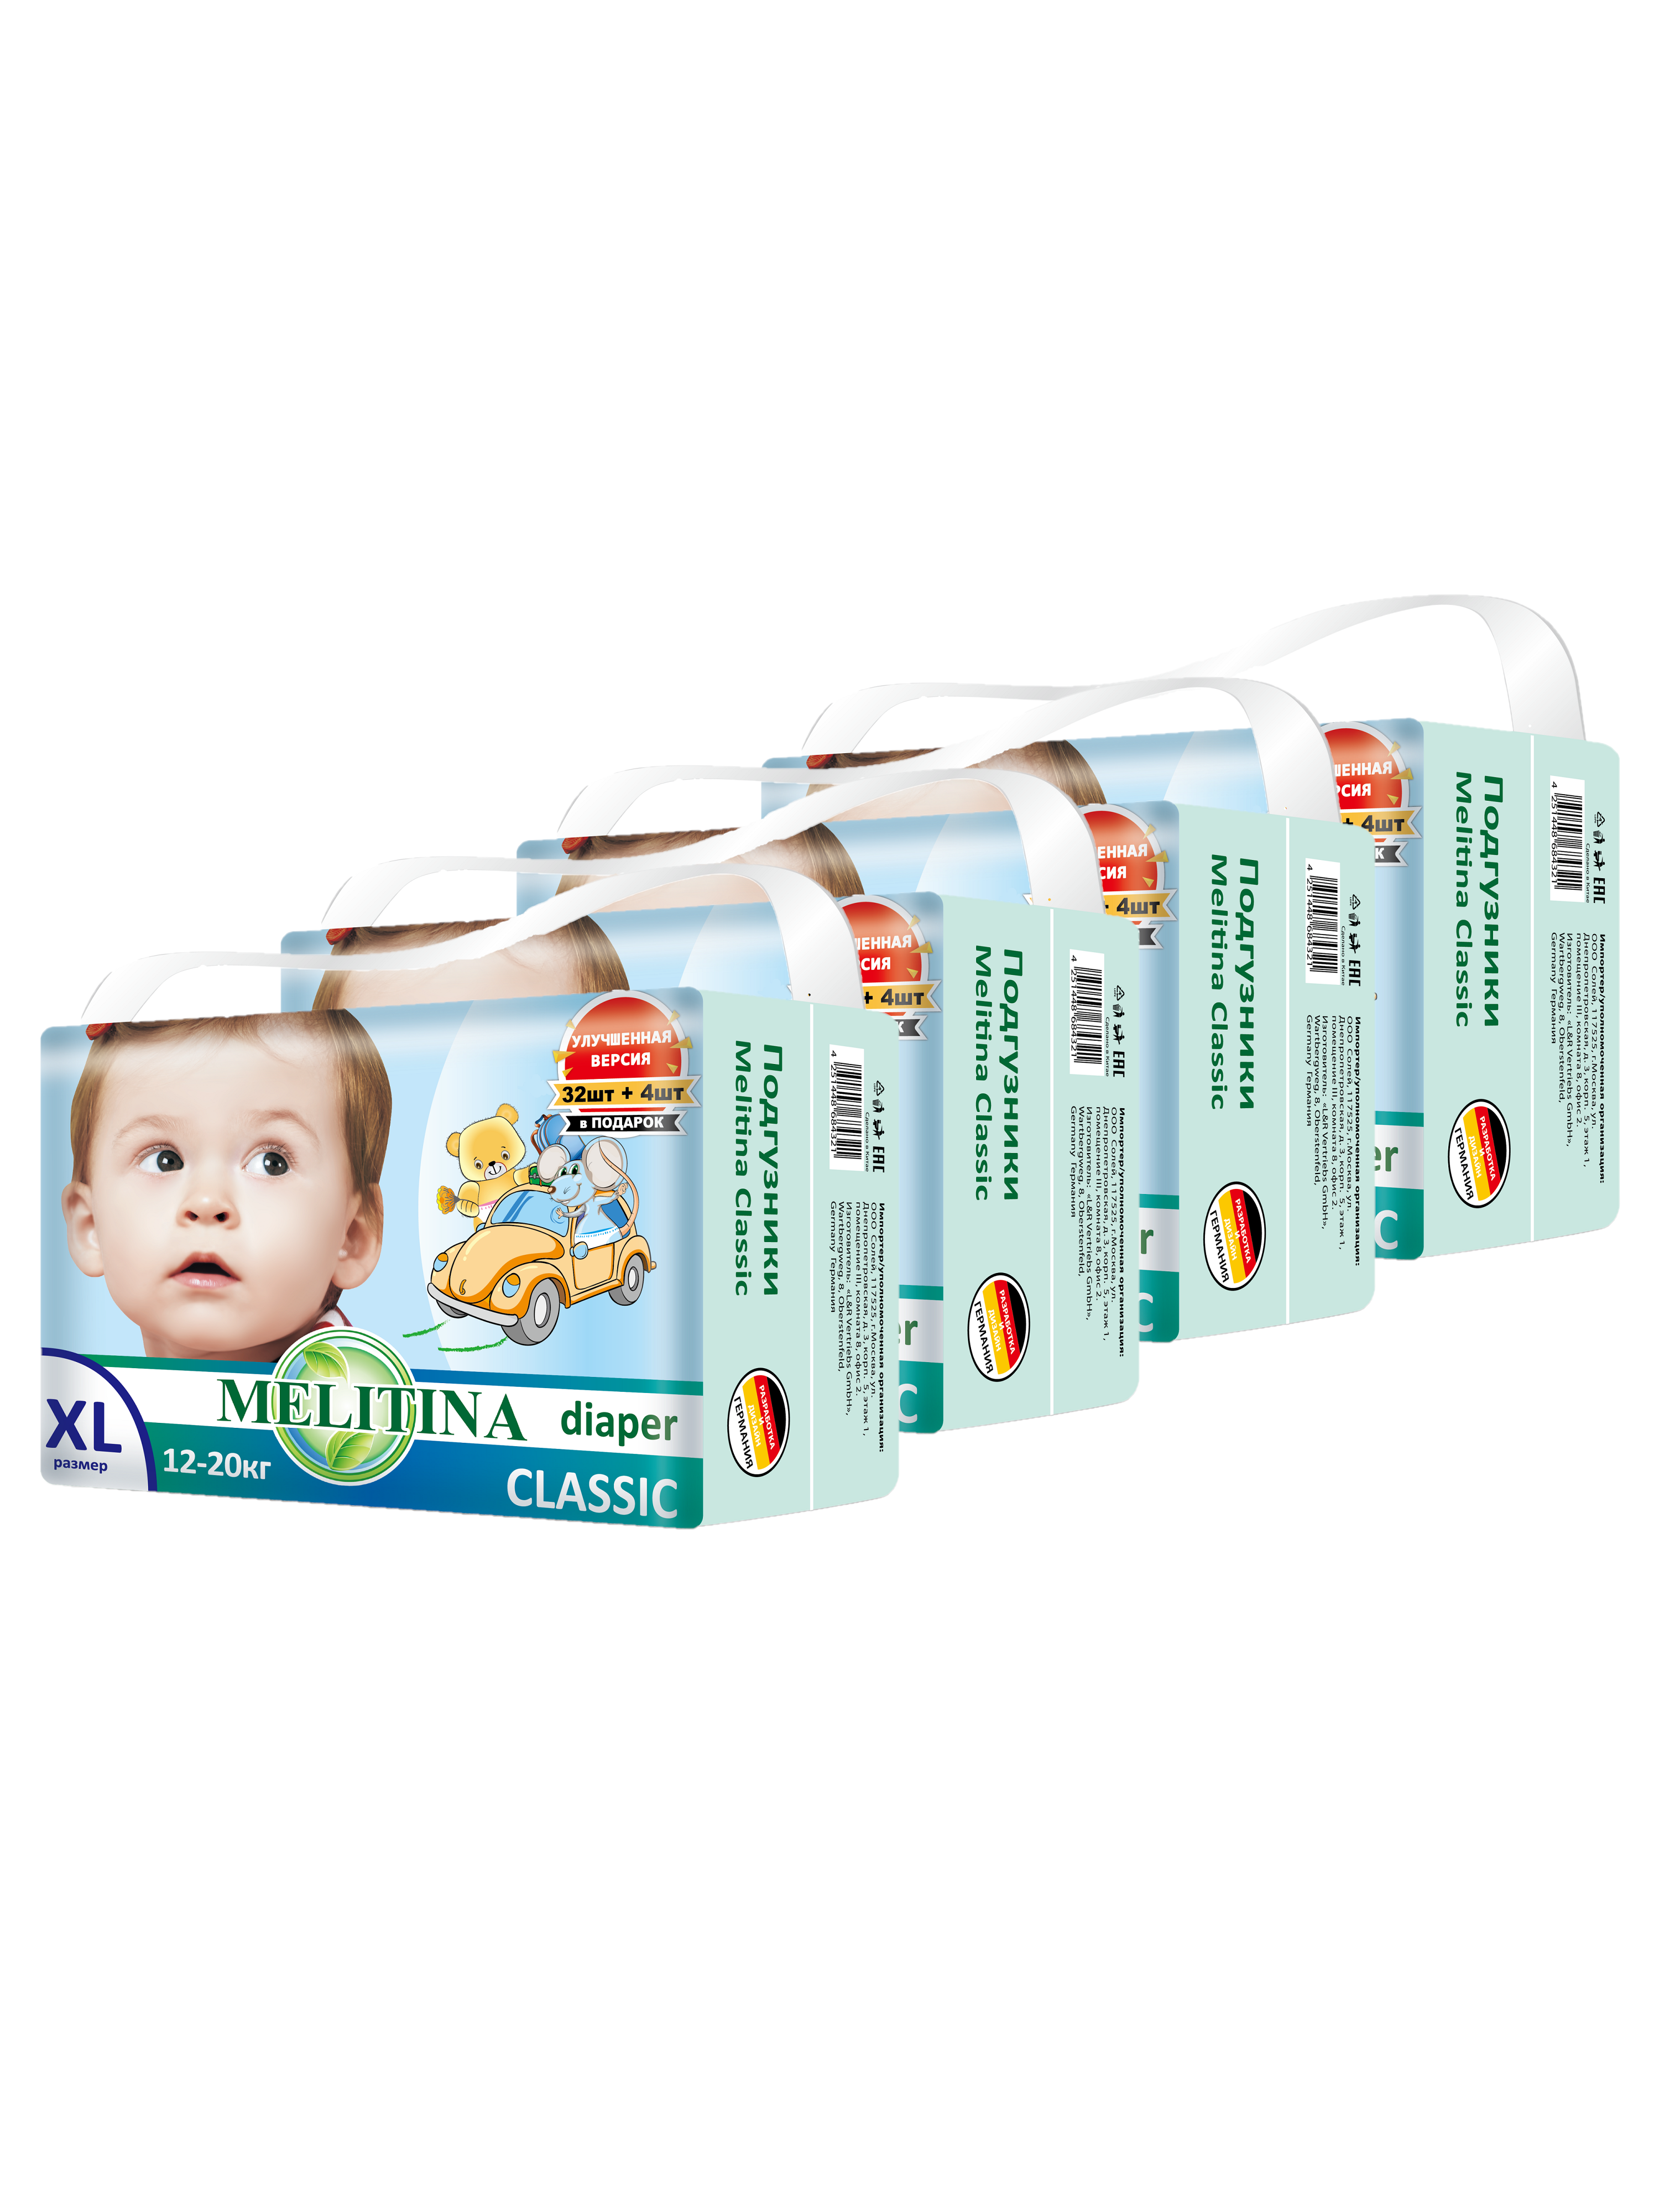 фото Подгузники для детей melitina classic памперсы для малышей размер xl, 5, 12-20 кг, 144 шт